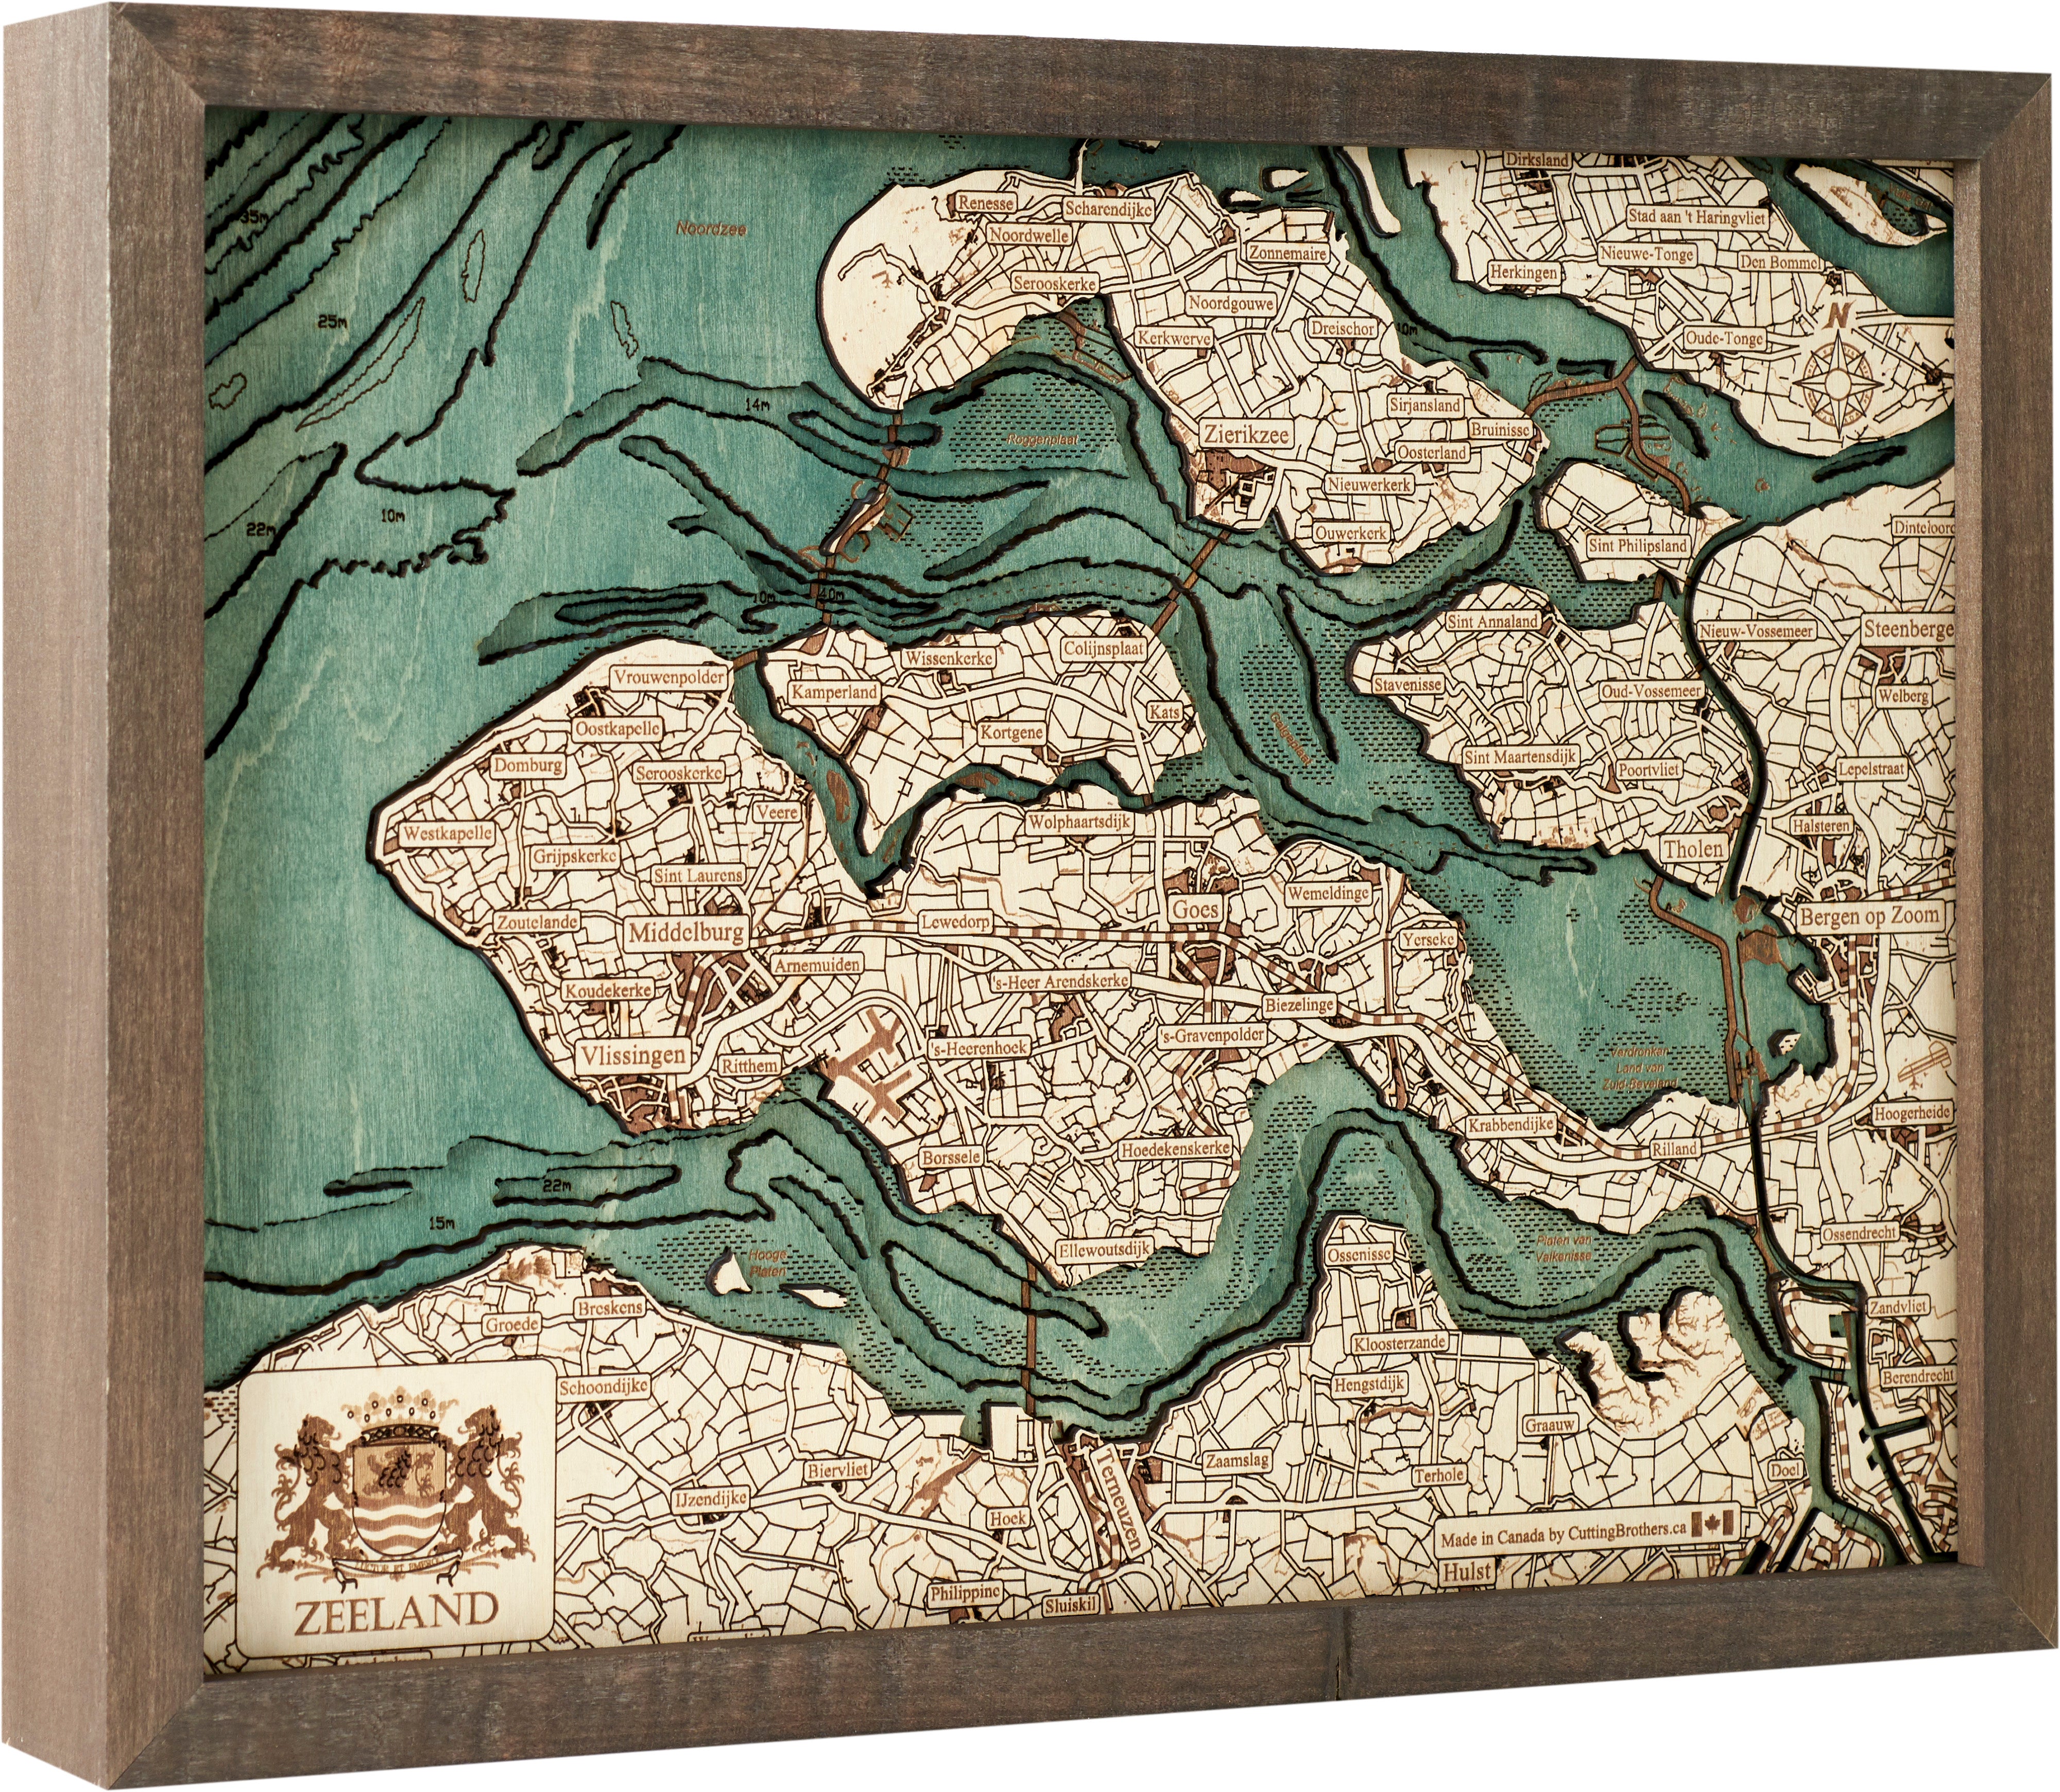 ZEELAND 3D wooden wall map - version S 